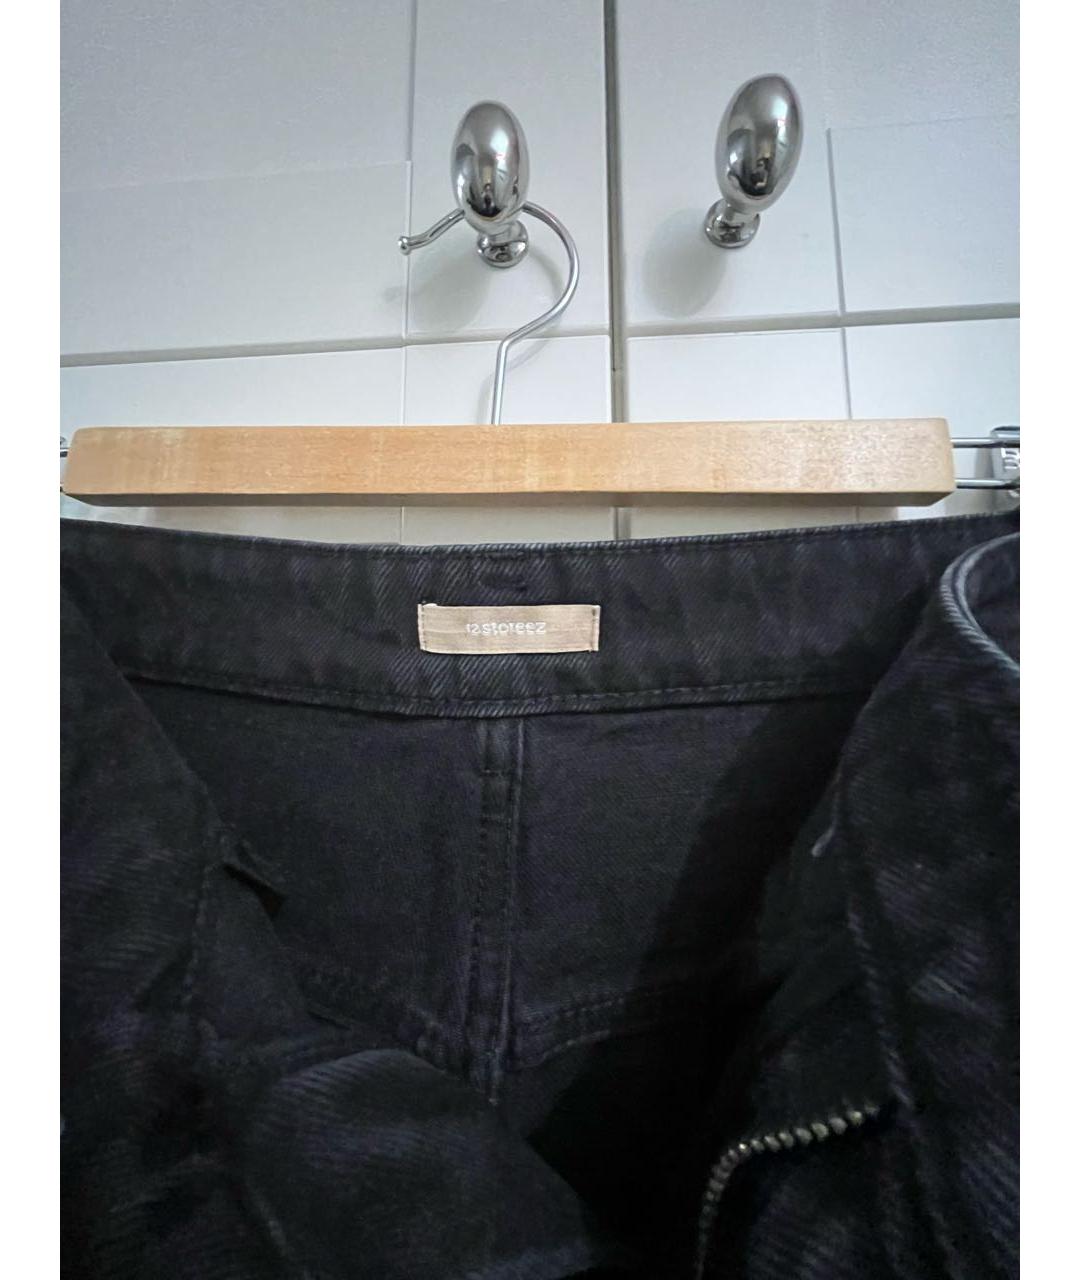 12 STOREEZ Черные хлопковые прямые джинсы, фото 3